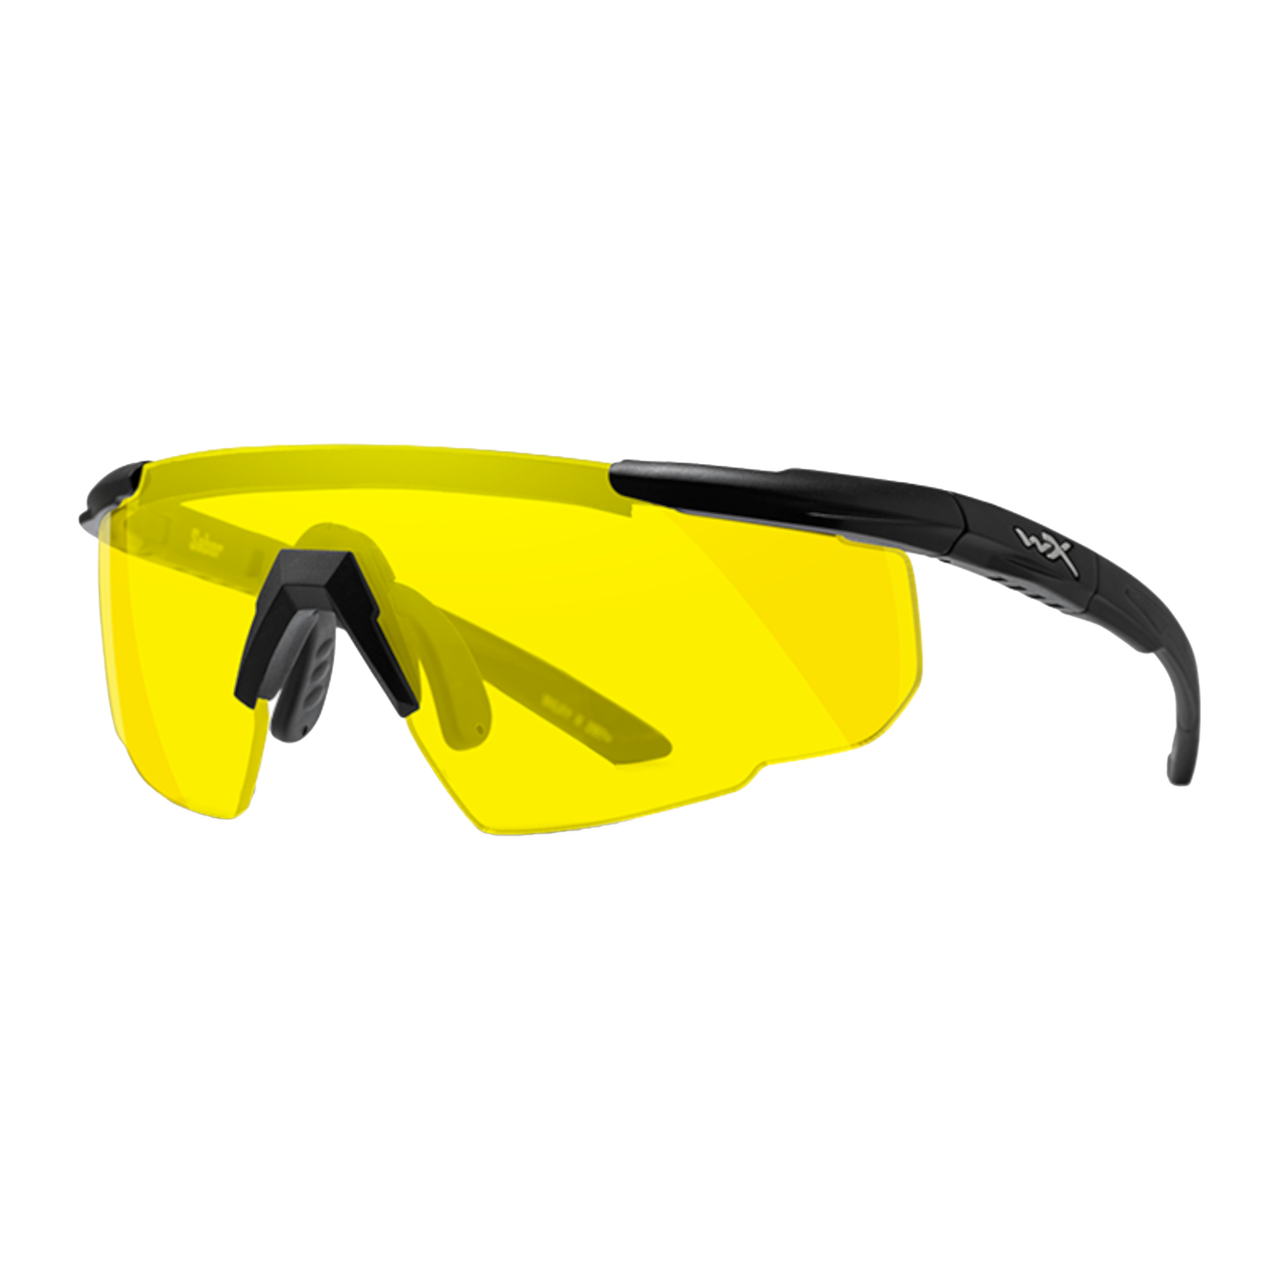 Тактичні захисні окуляри SABER ADVANCED, Wiley X, чорні, напівобідкові, жовті лінзи